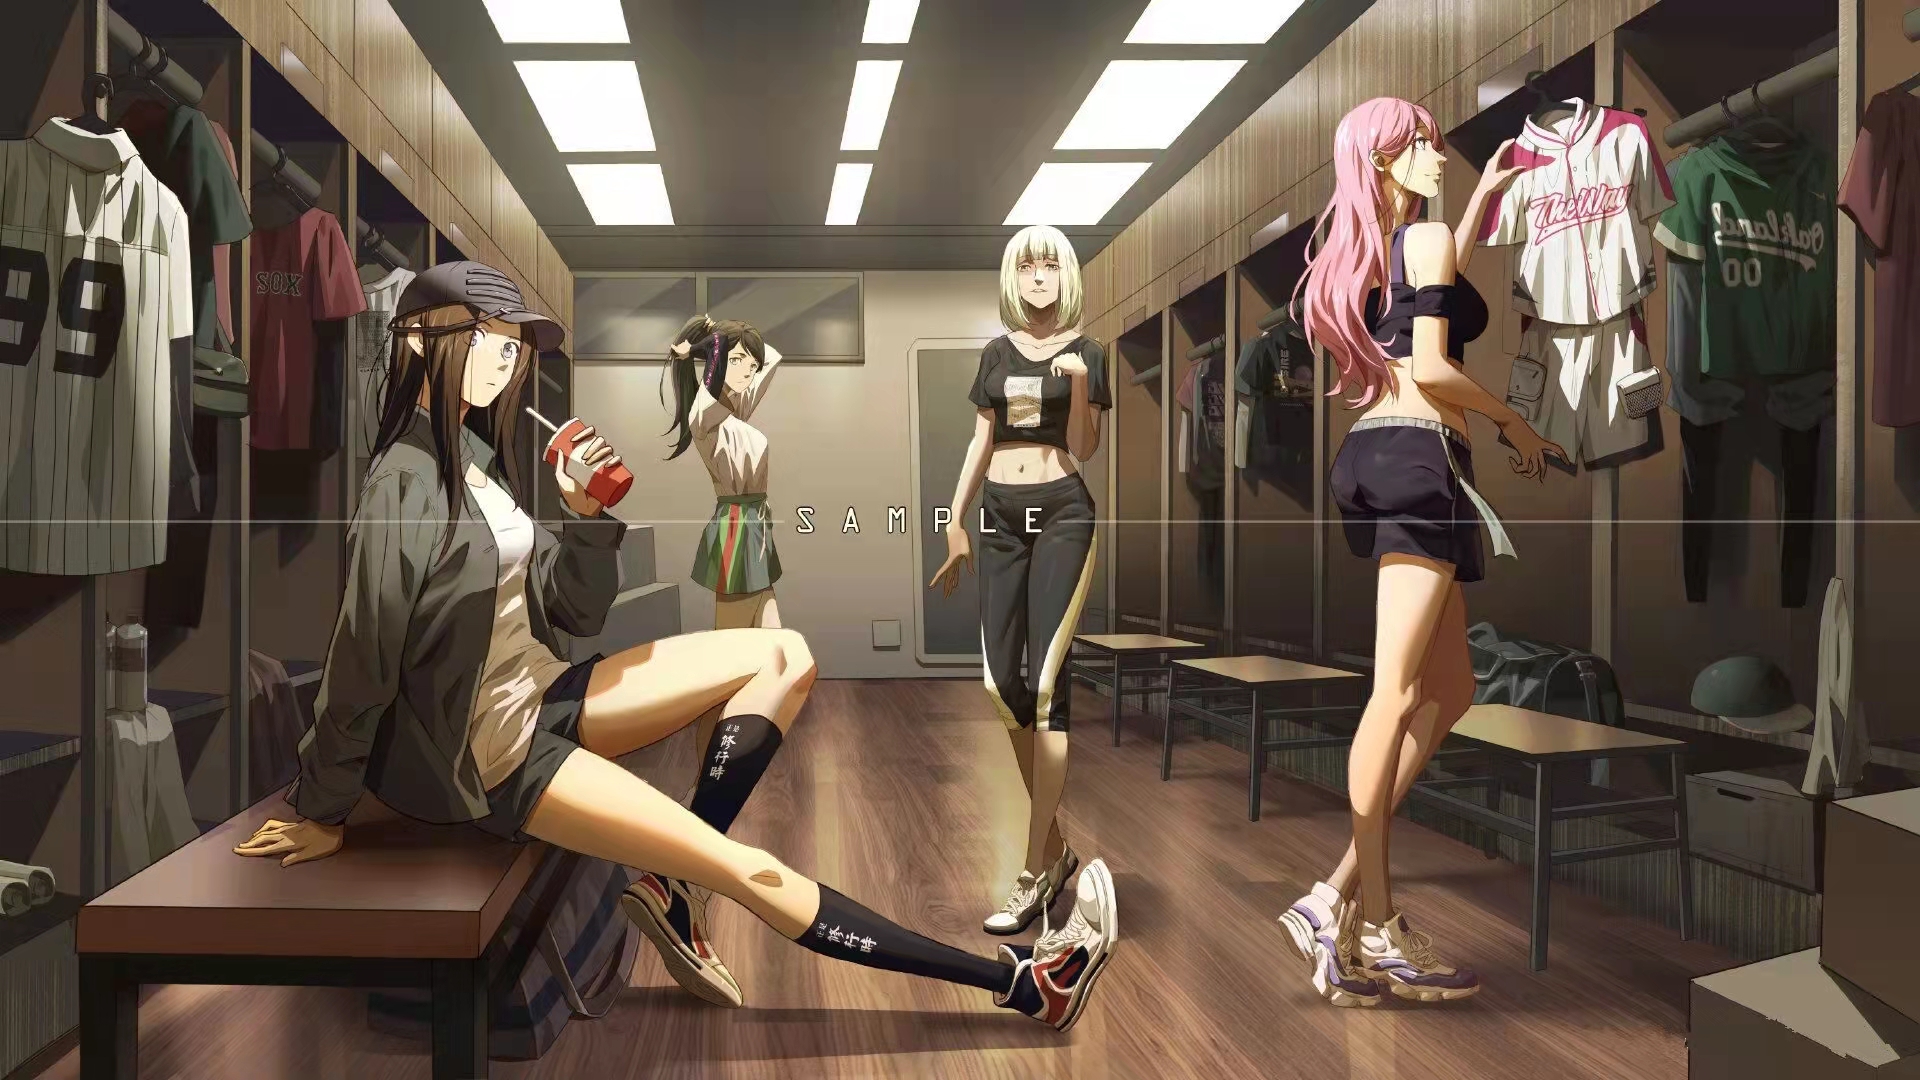 Anime Anime Girls Locker Room Shorts Skirt Hat Drink 1920x1080